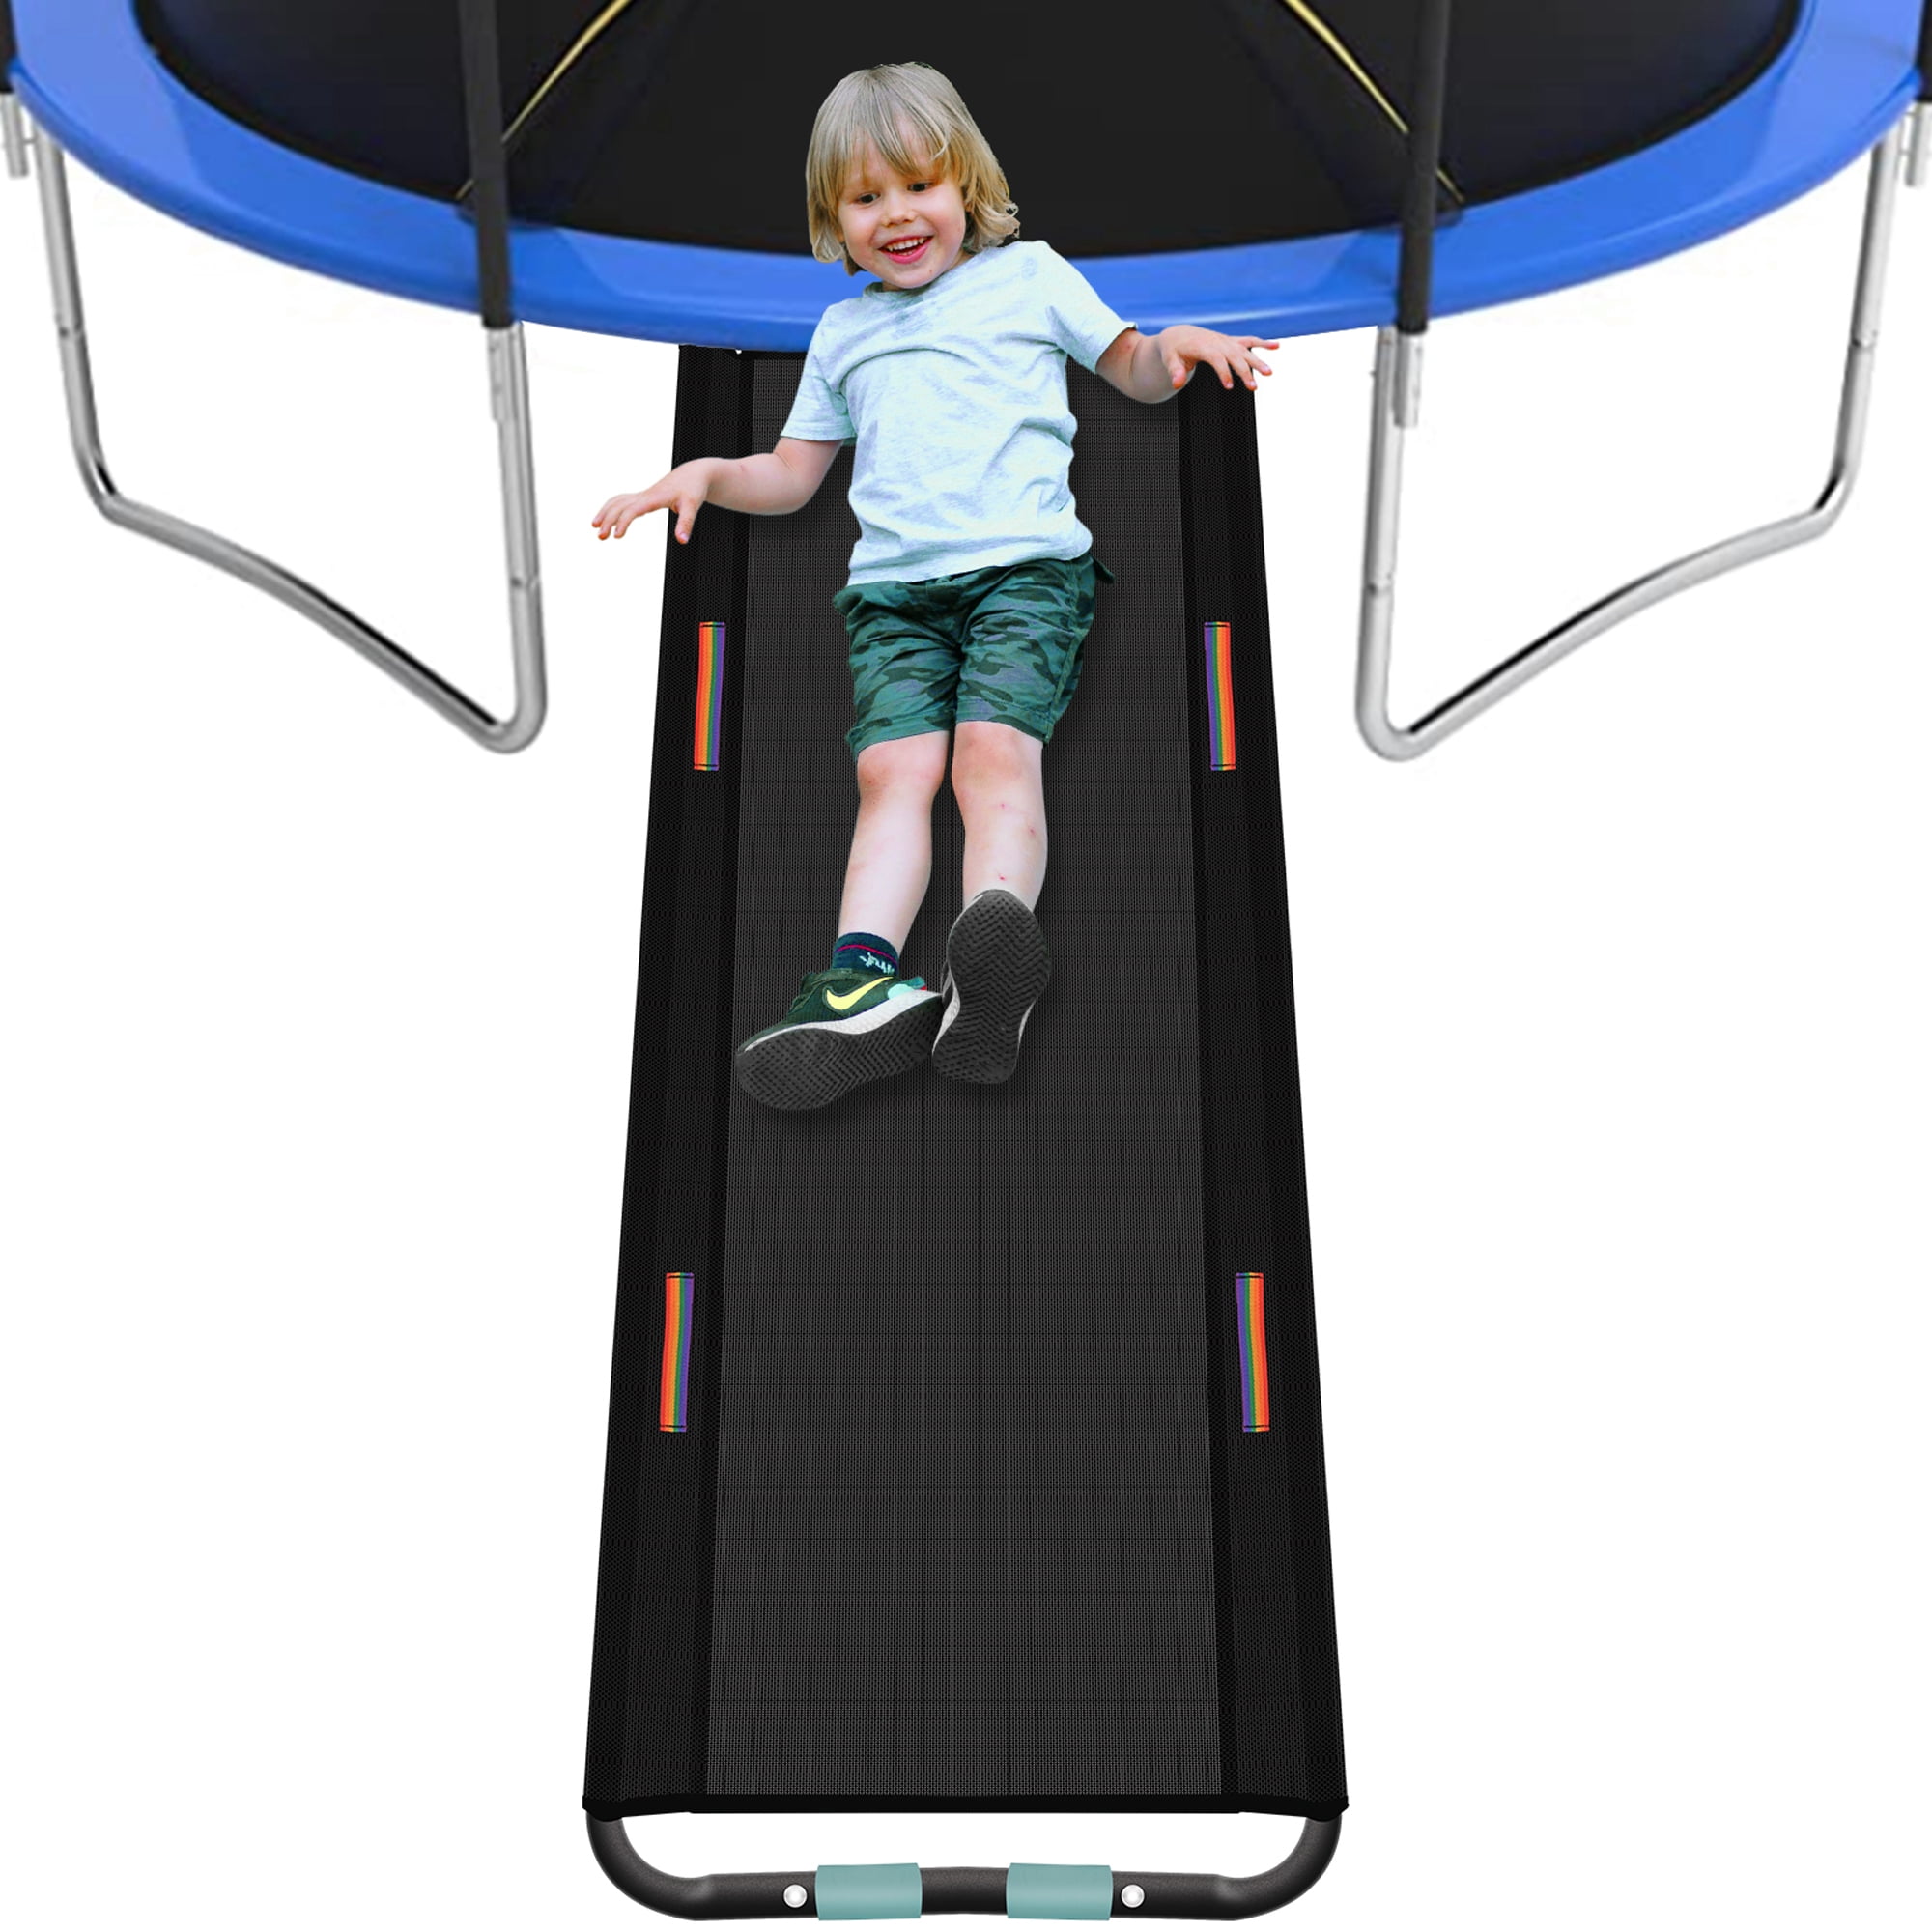 Upper Bounce Trampoline Outdoor Step Ladder & Wave Slide Set for